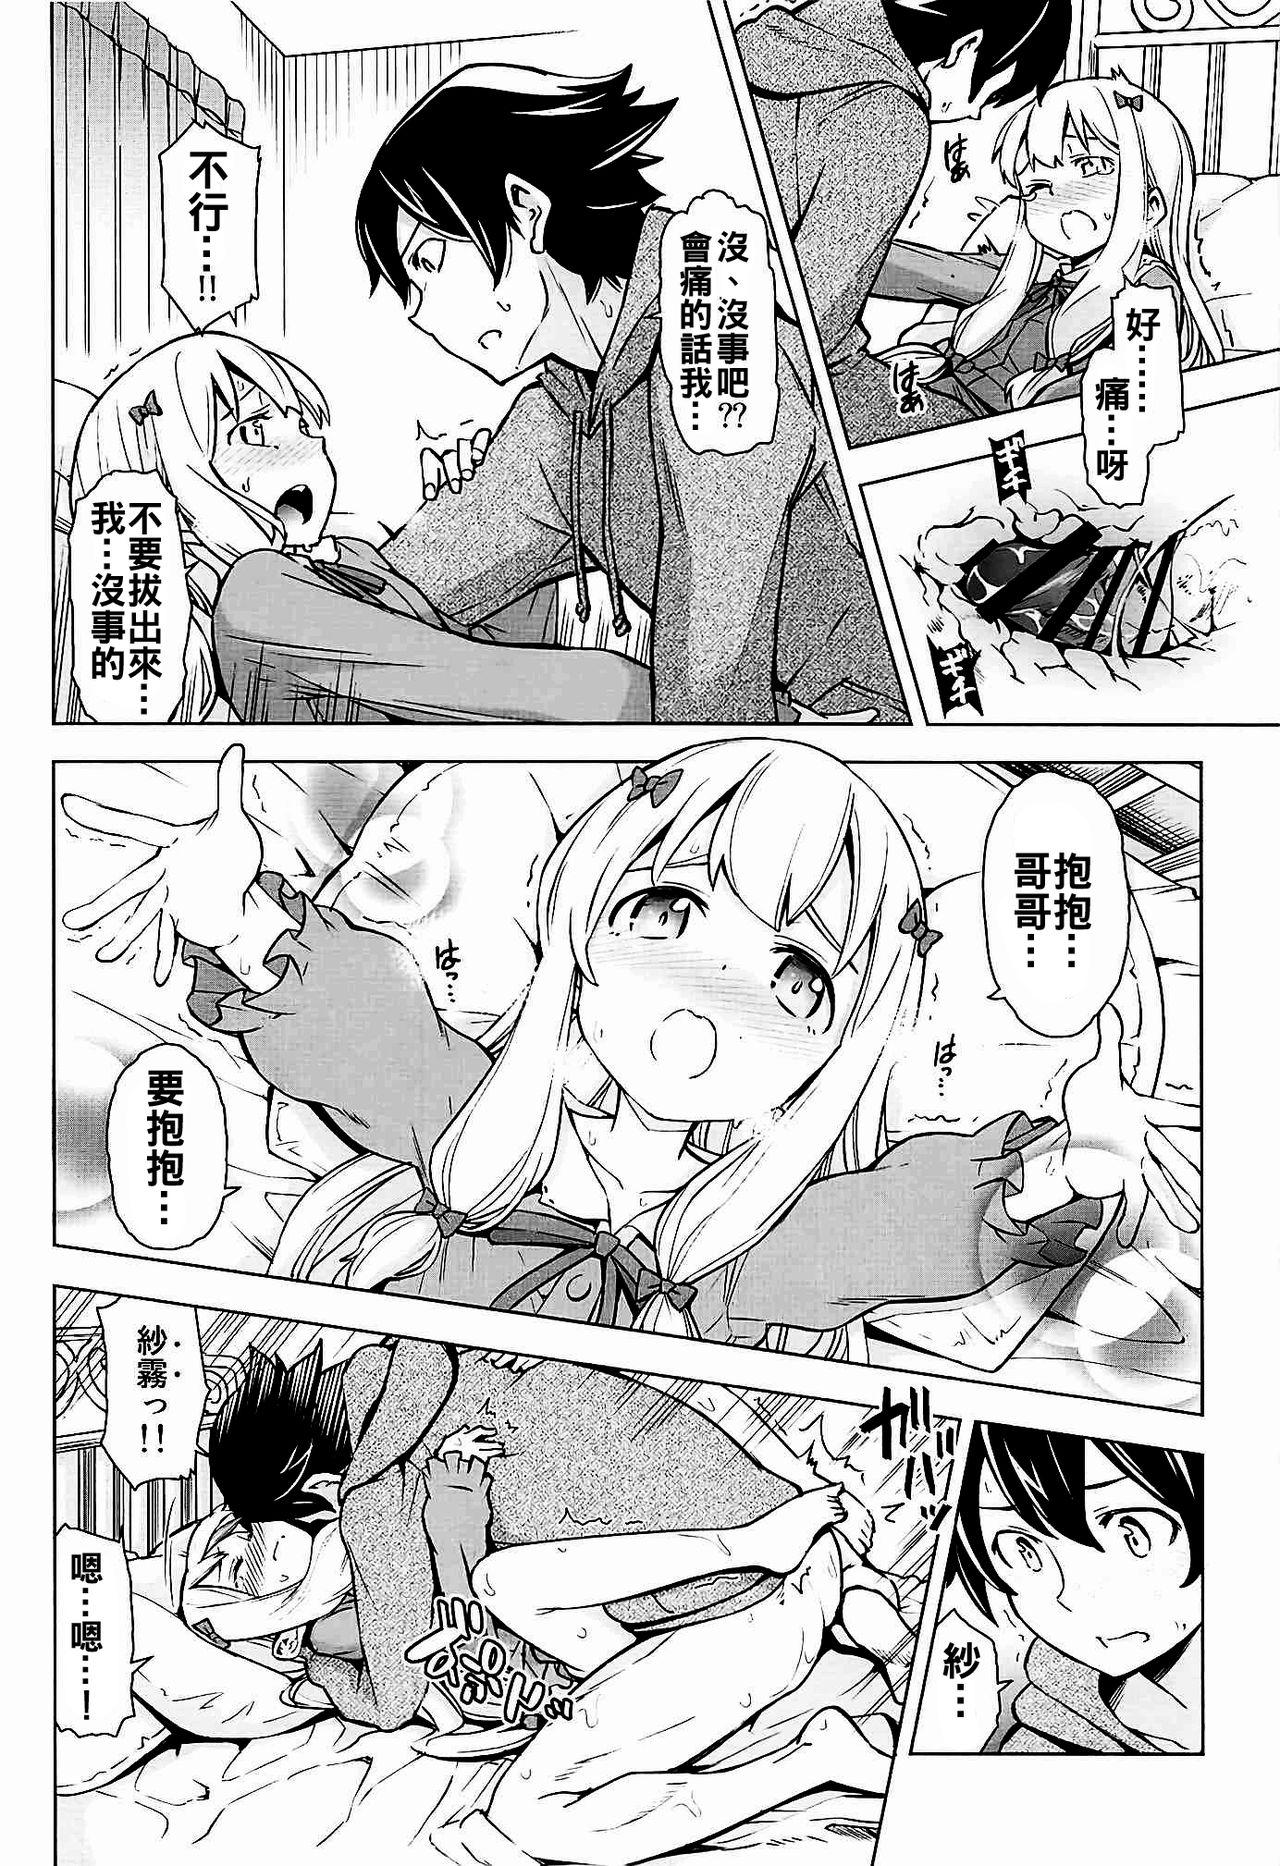 Nut Usotsuki Hentai Nii-san nante Daikirai!! - Eromanga sensei Friends - Page 12